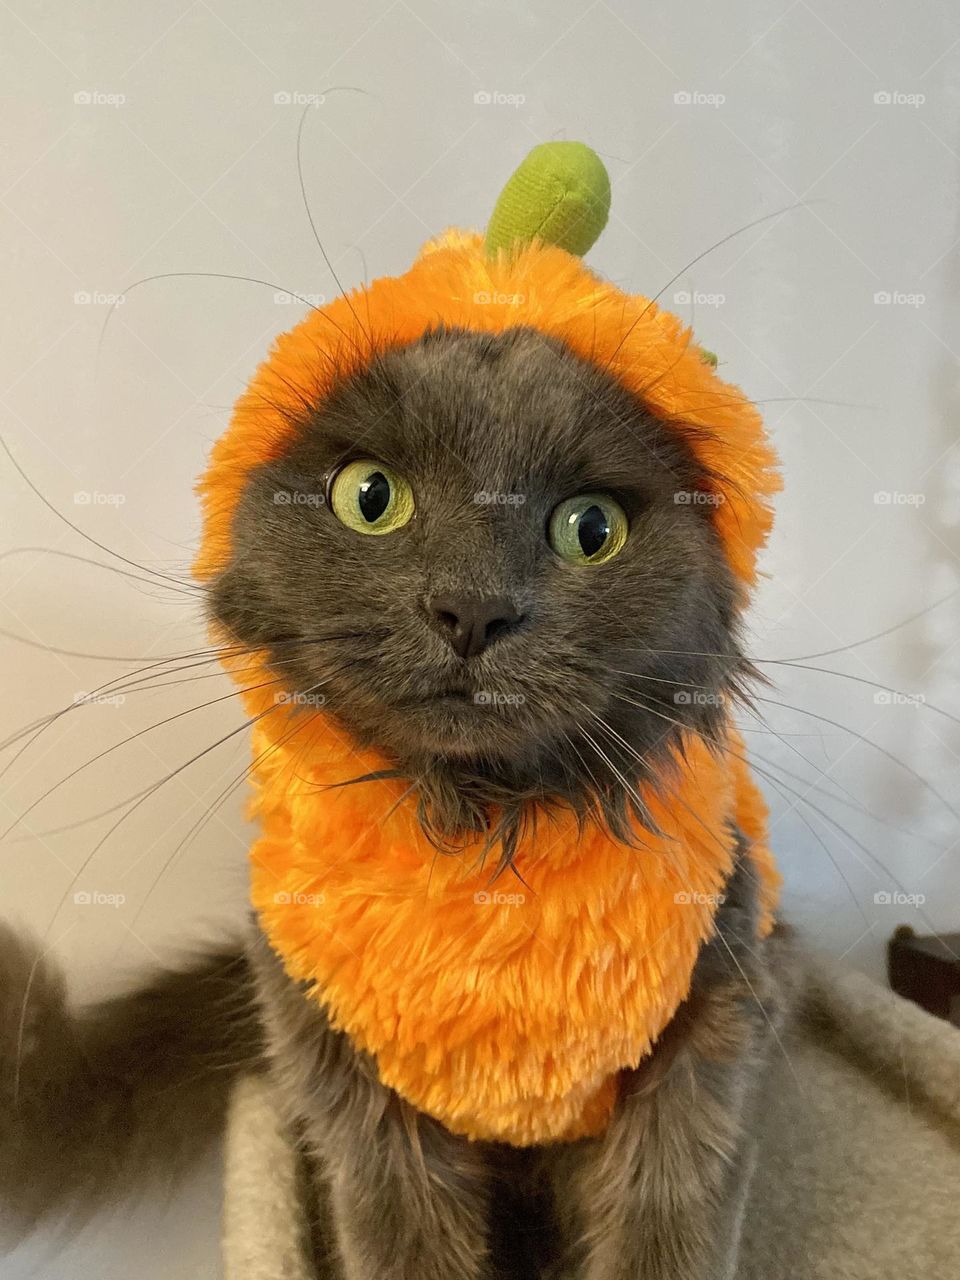 A cat dressed up as a pumpkin